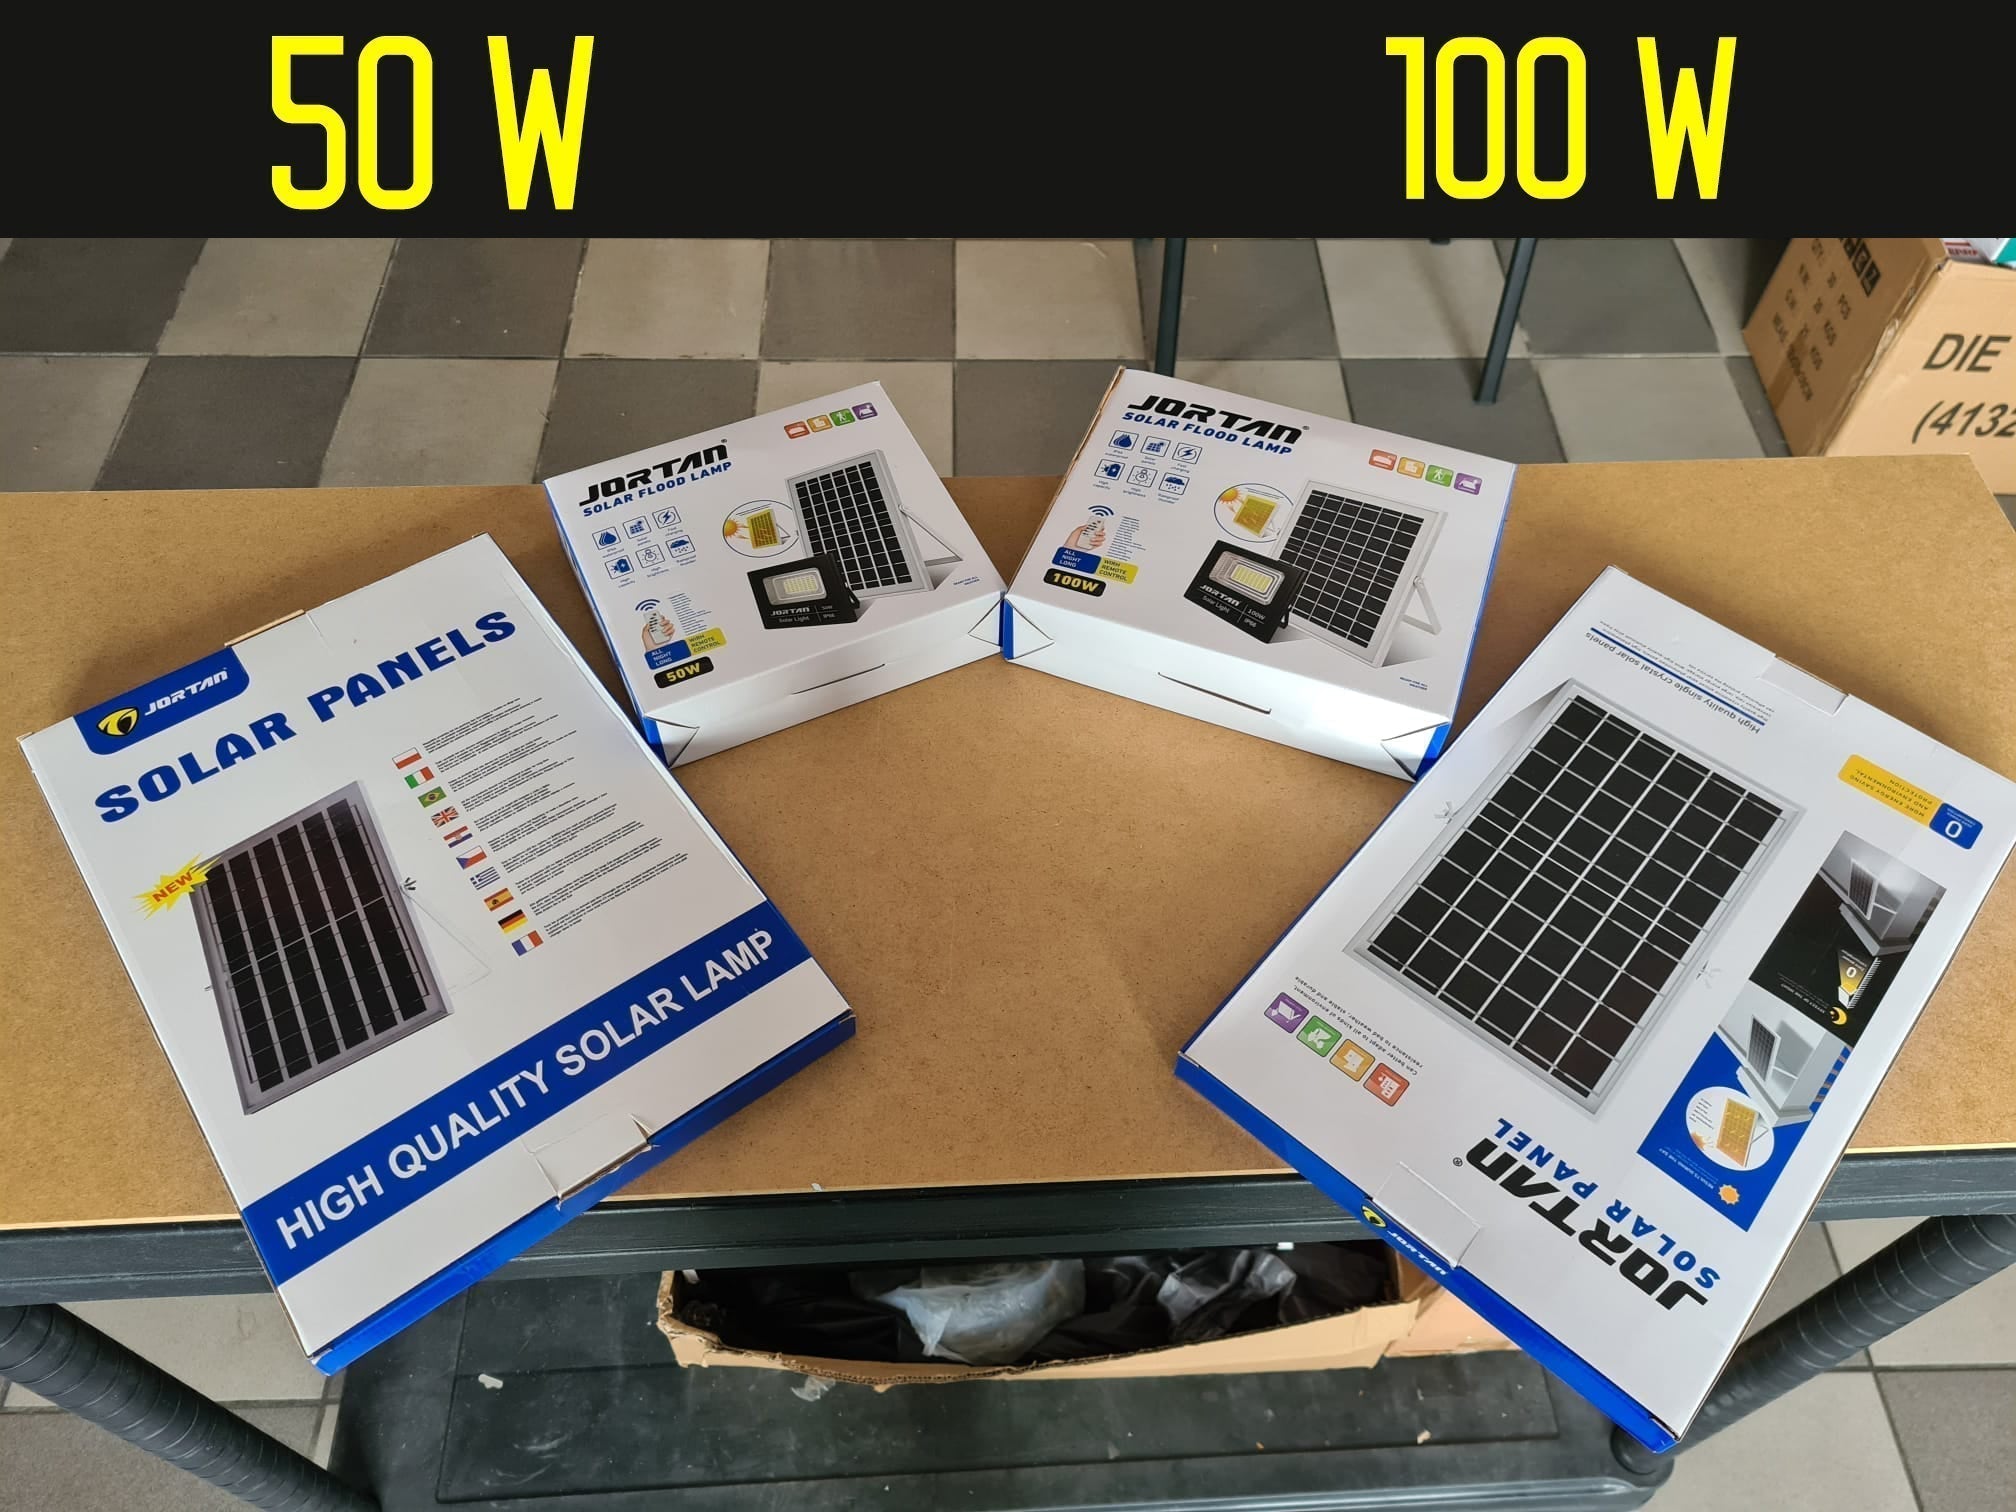 Proiector Jon SOLAR 200W, Lampa cu Incarcare Solara, Panou Solar separat + Accesorii